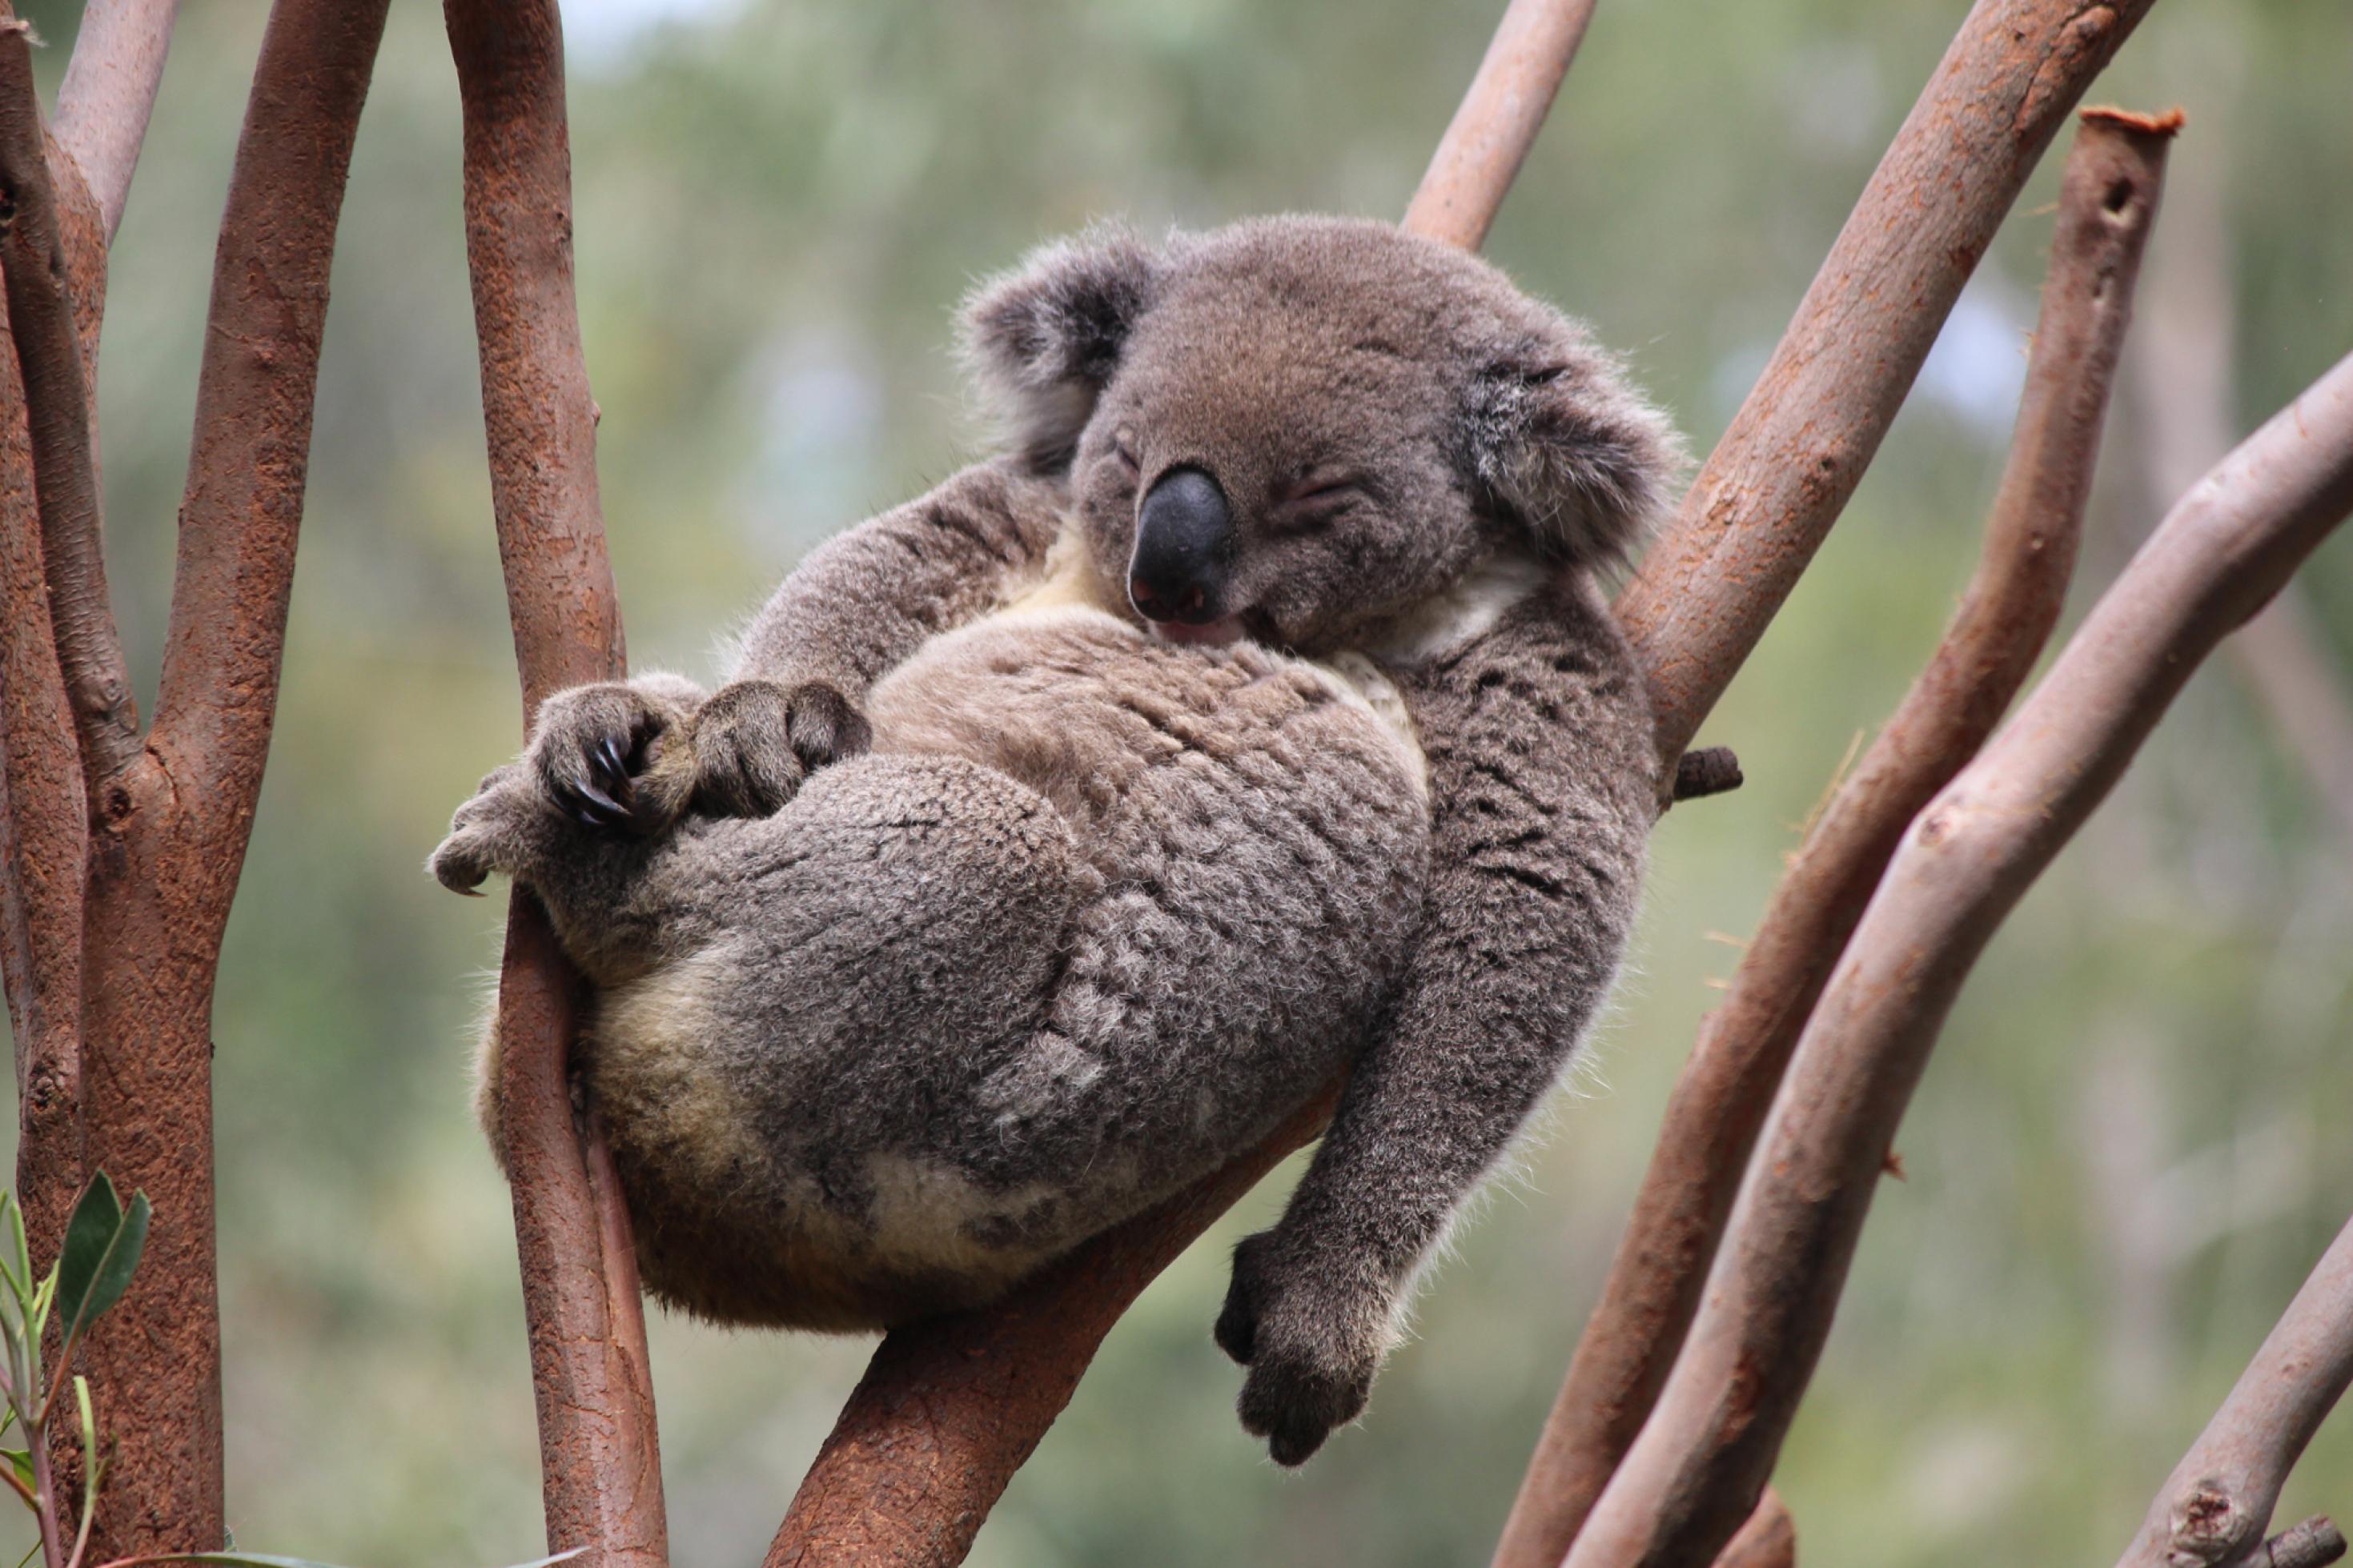 Auf den glatten, braunen Ästen eines Eukalyptus-Baumes hat es sich ein Koala – der einem Teddybären sehr ähnelt – gemütlich gemacht. Er hat braun-graues, dichtes Fell und eine dicke schwarzglänzende Nase, ruht mit geschlossenen Augen, den Rücken an die Äste gelehnt. Die Beine sind angezogen wie bei einem Baby, der rechte Arm ruht auf dem Bauch, der linke hängt schlaff herunter.